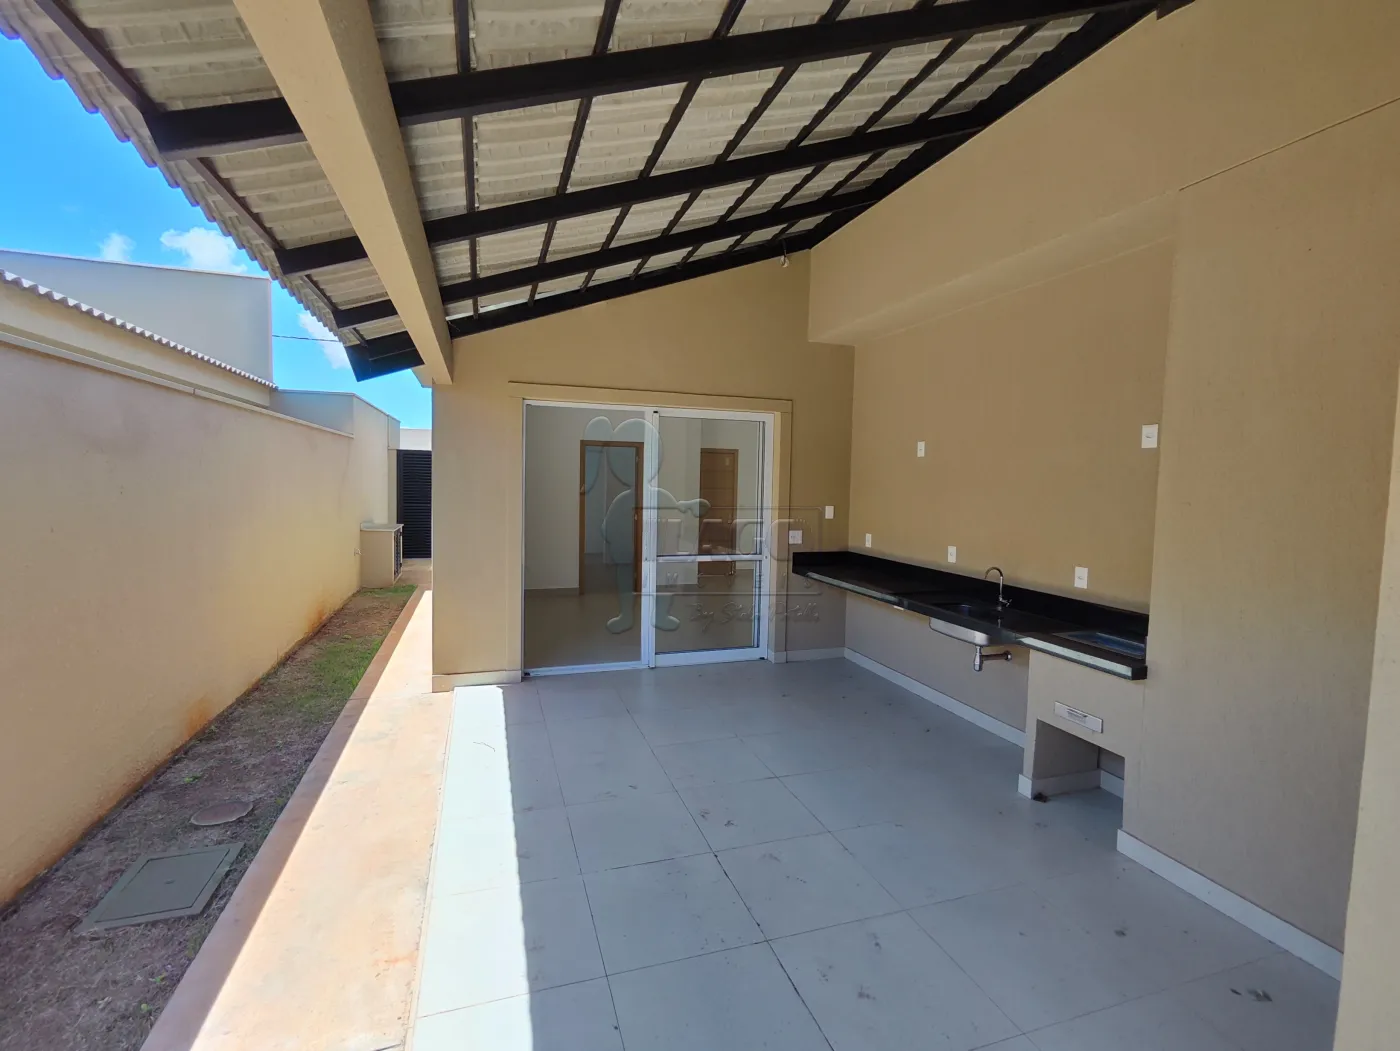 Comprar Casa condomínio / Padrão em Cravinhos R$ 950.000,00 - Foto 26